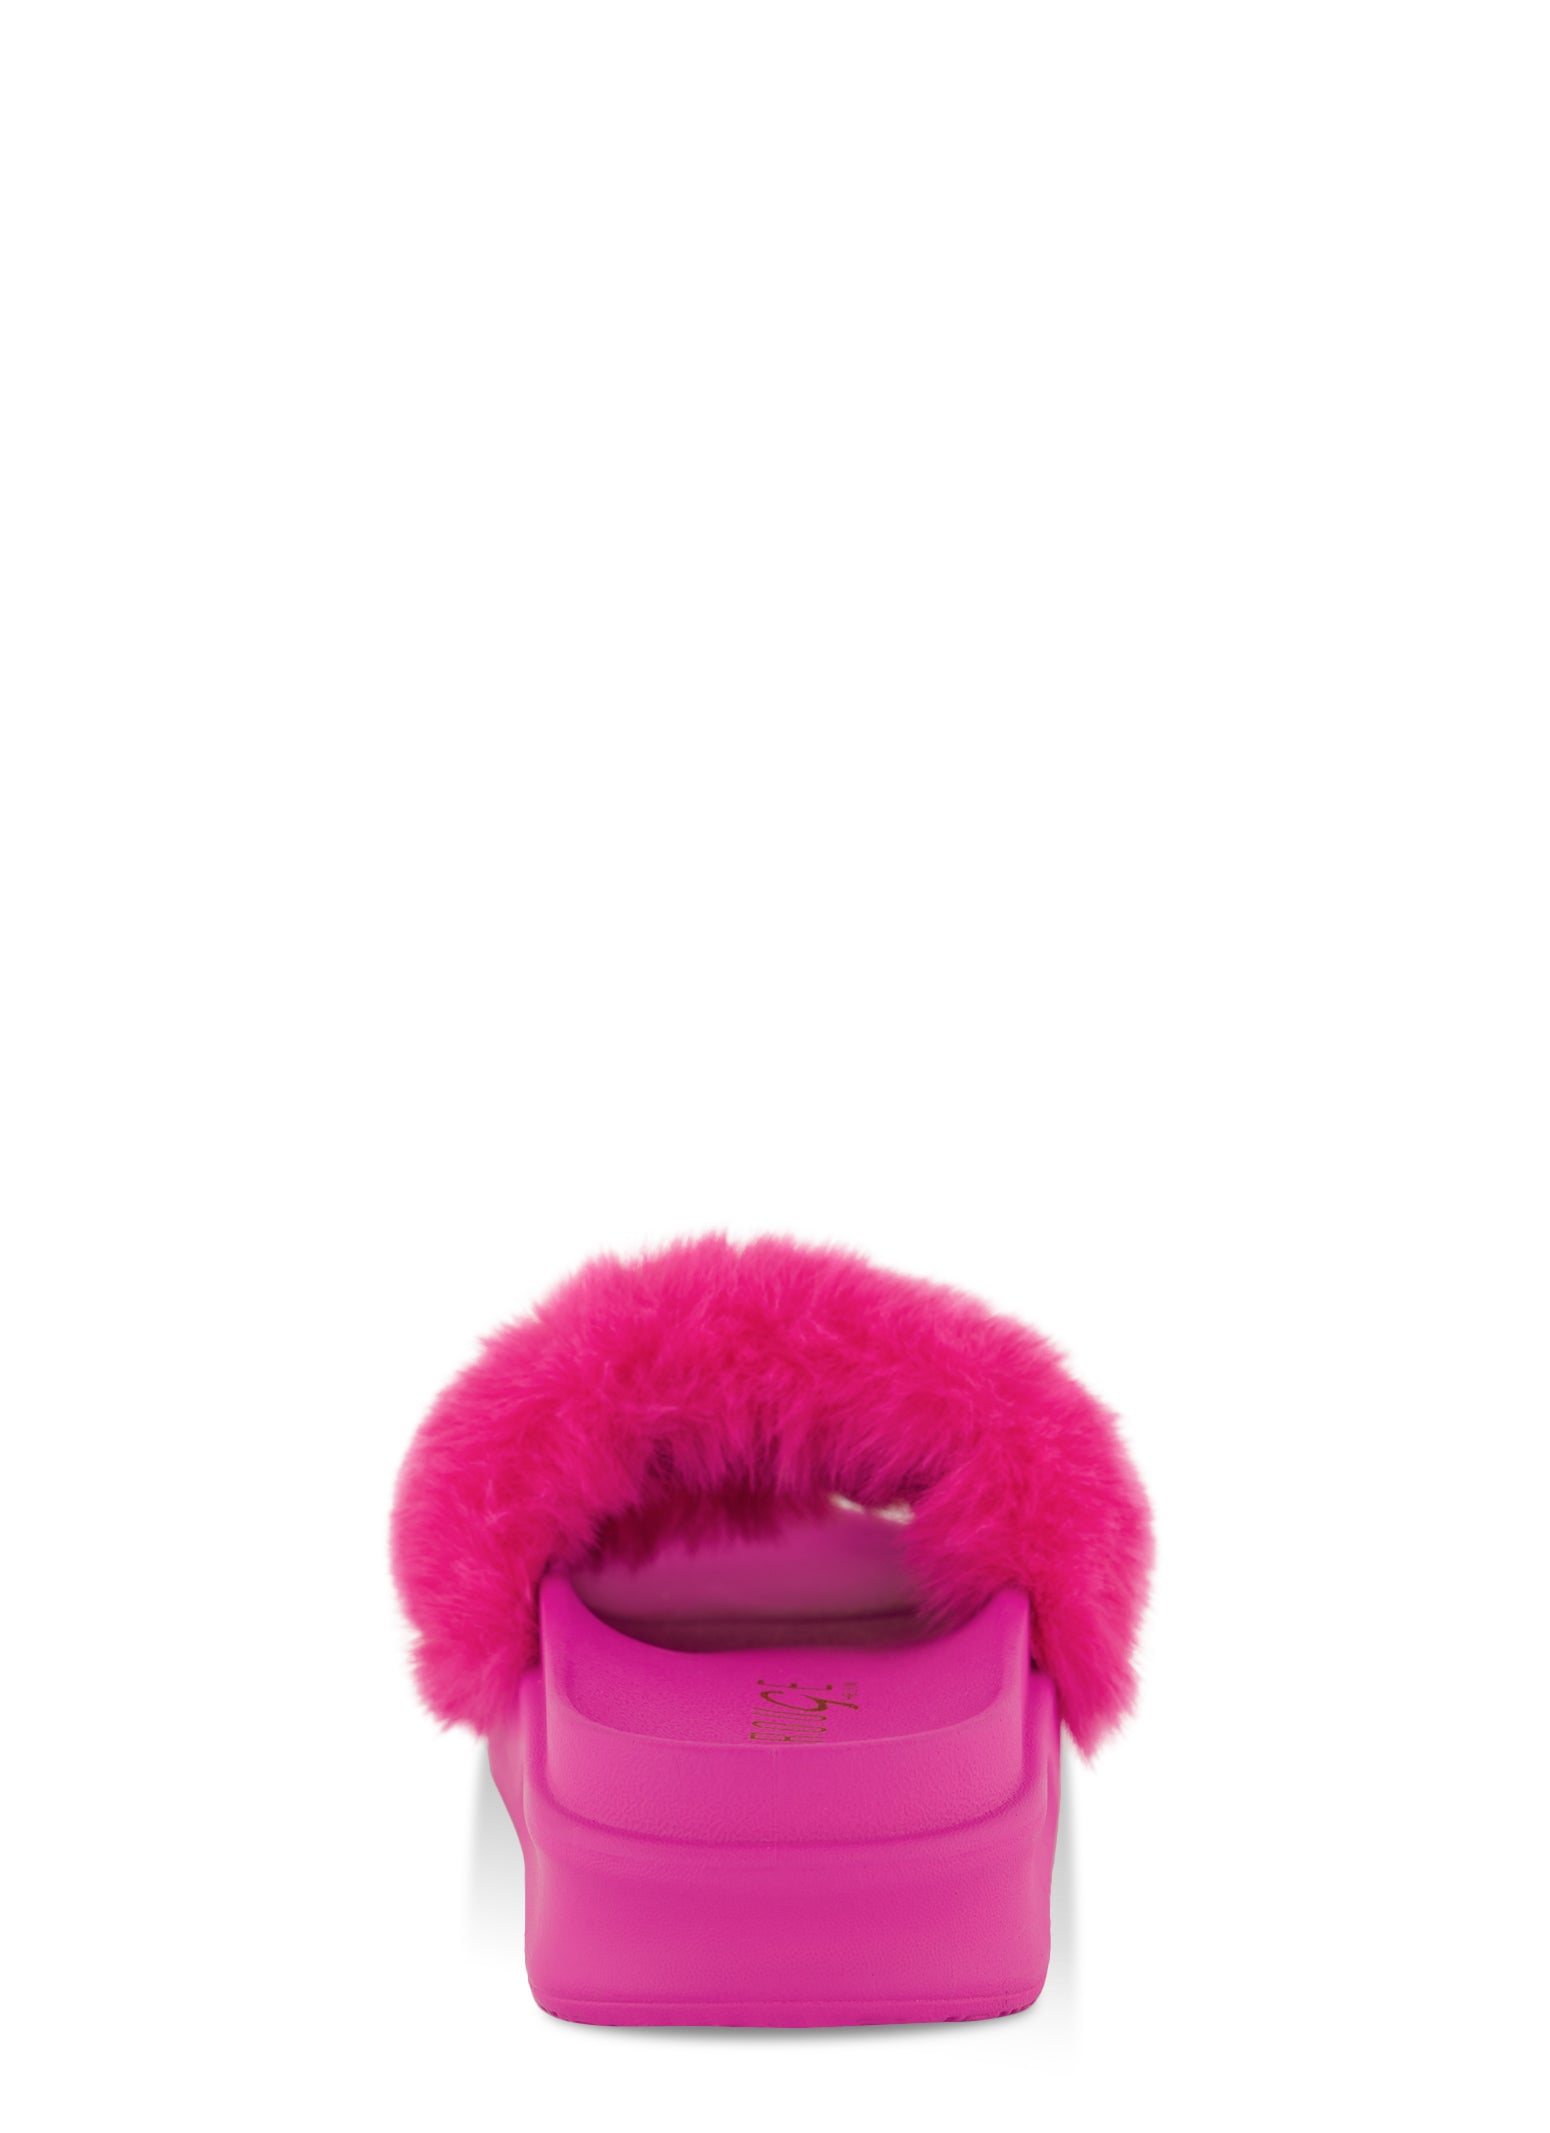 Givenchy, Pink mink slide sandals